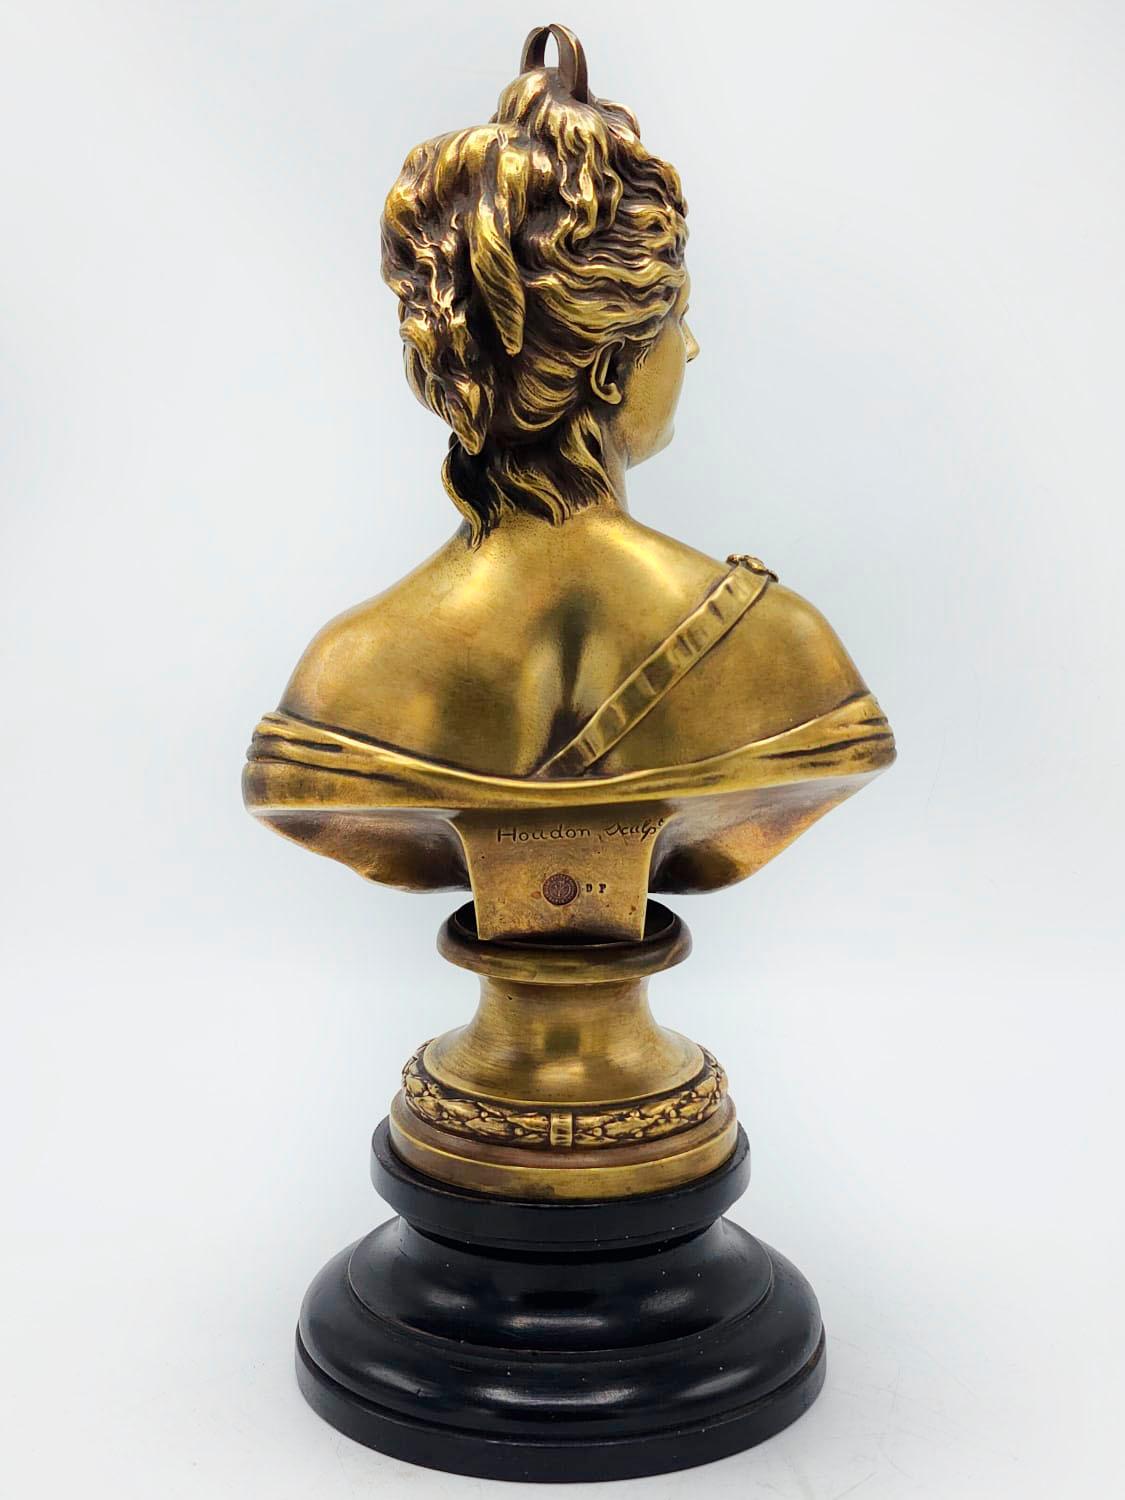 Buste de Diane chasseresse en bronze français Louis XVI 19e siècle - Artiste Houdon

Sculpture en bronze représentant Diane chasseresse d'après Jean-Antoine Houdon (1741-1828). Dans la mythologie romaine, Diane est la déesse de la chasse et de la